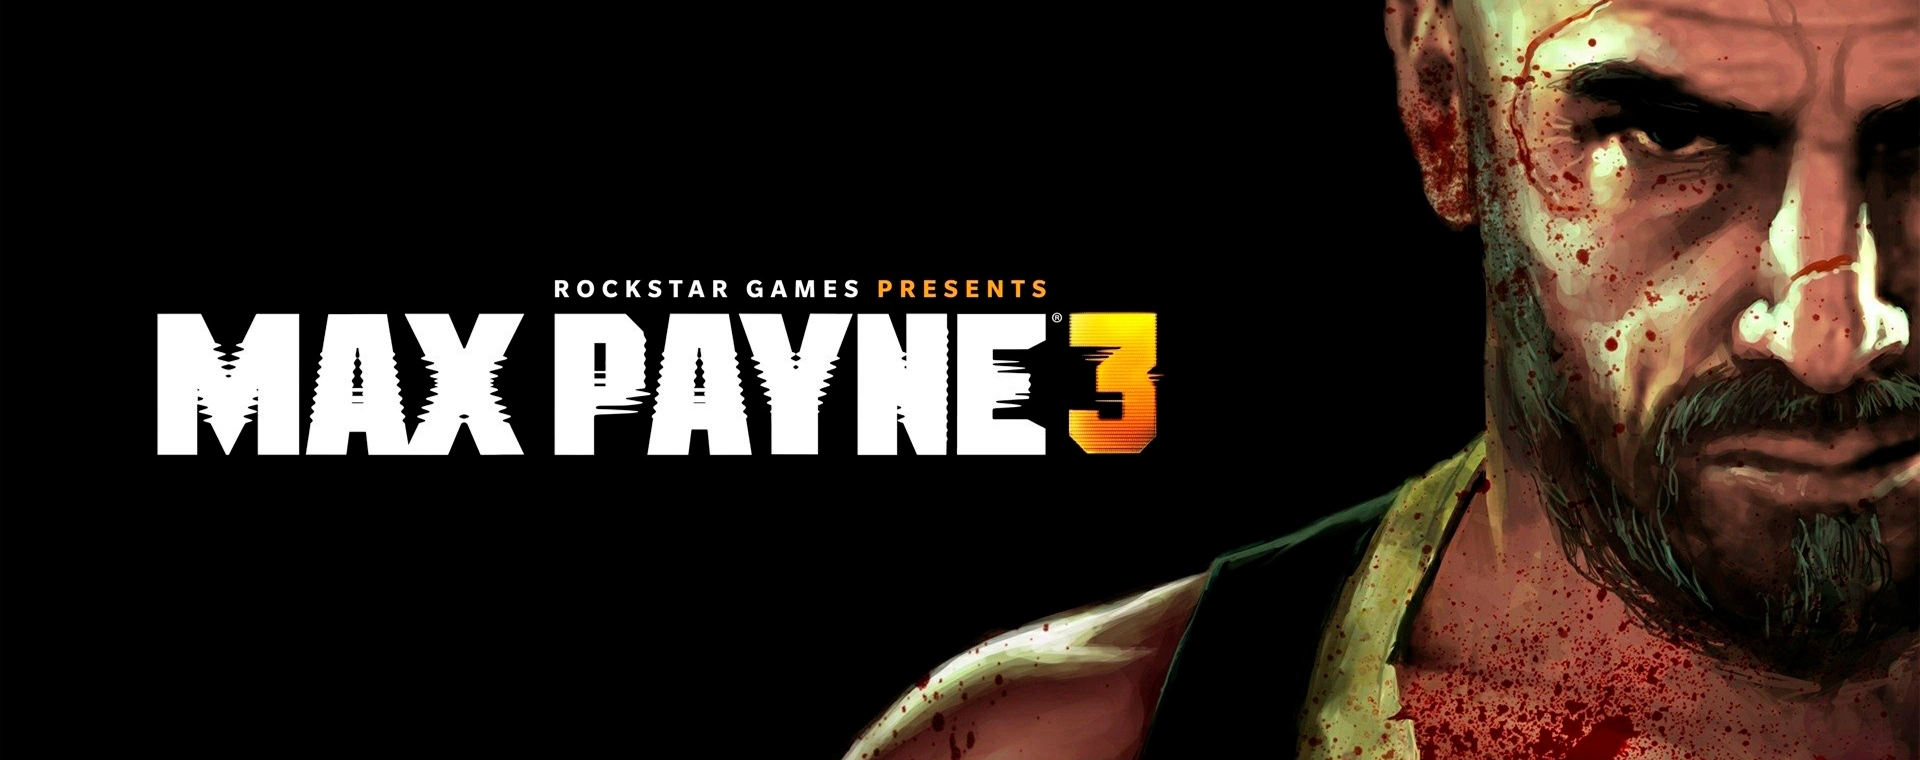 Примечания к обновлению для Max Payne 3 - Rockstar Games Customer Support